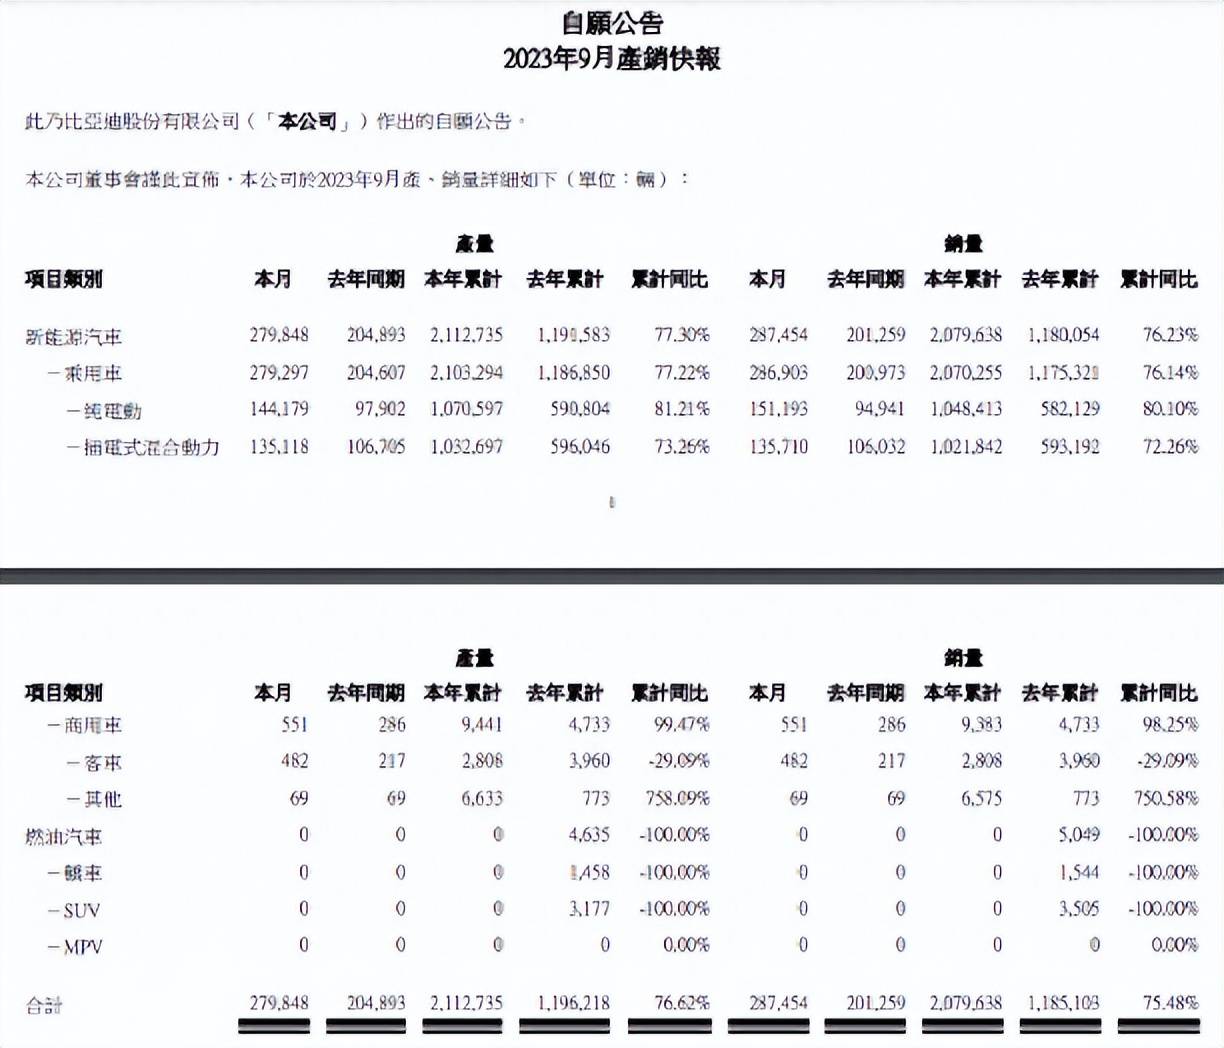 中国电视排行榜_中国电视市场TOP10排名:小米再次位居首位